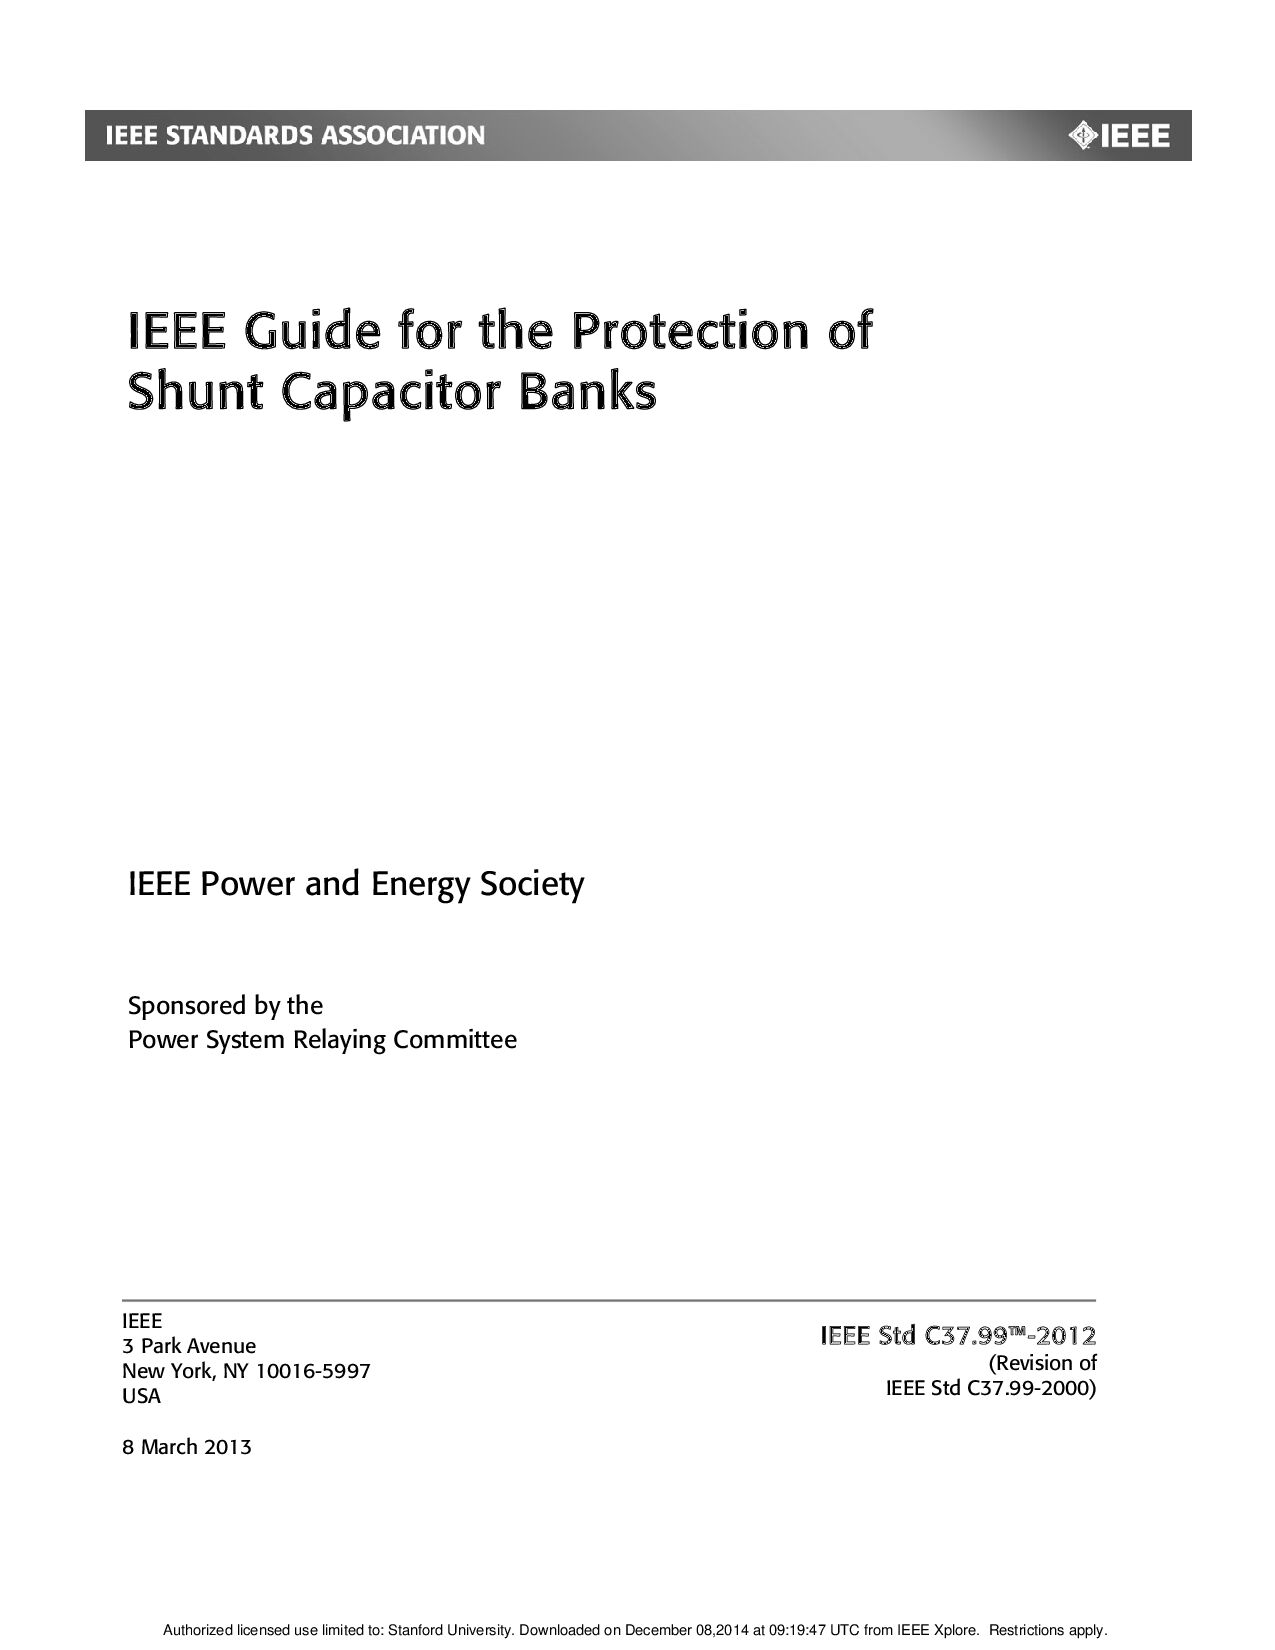 IEEE Std C37.99-2012